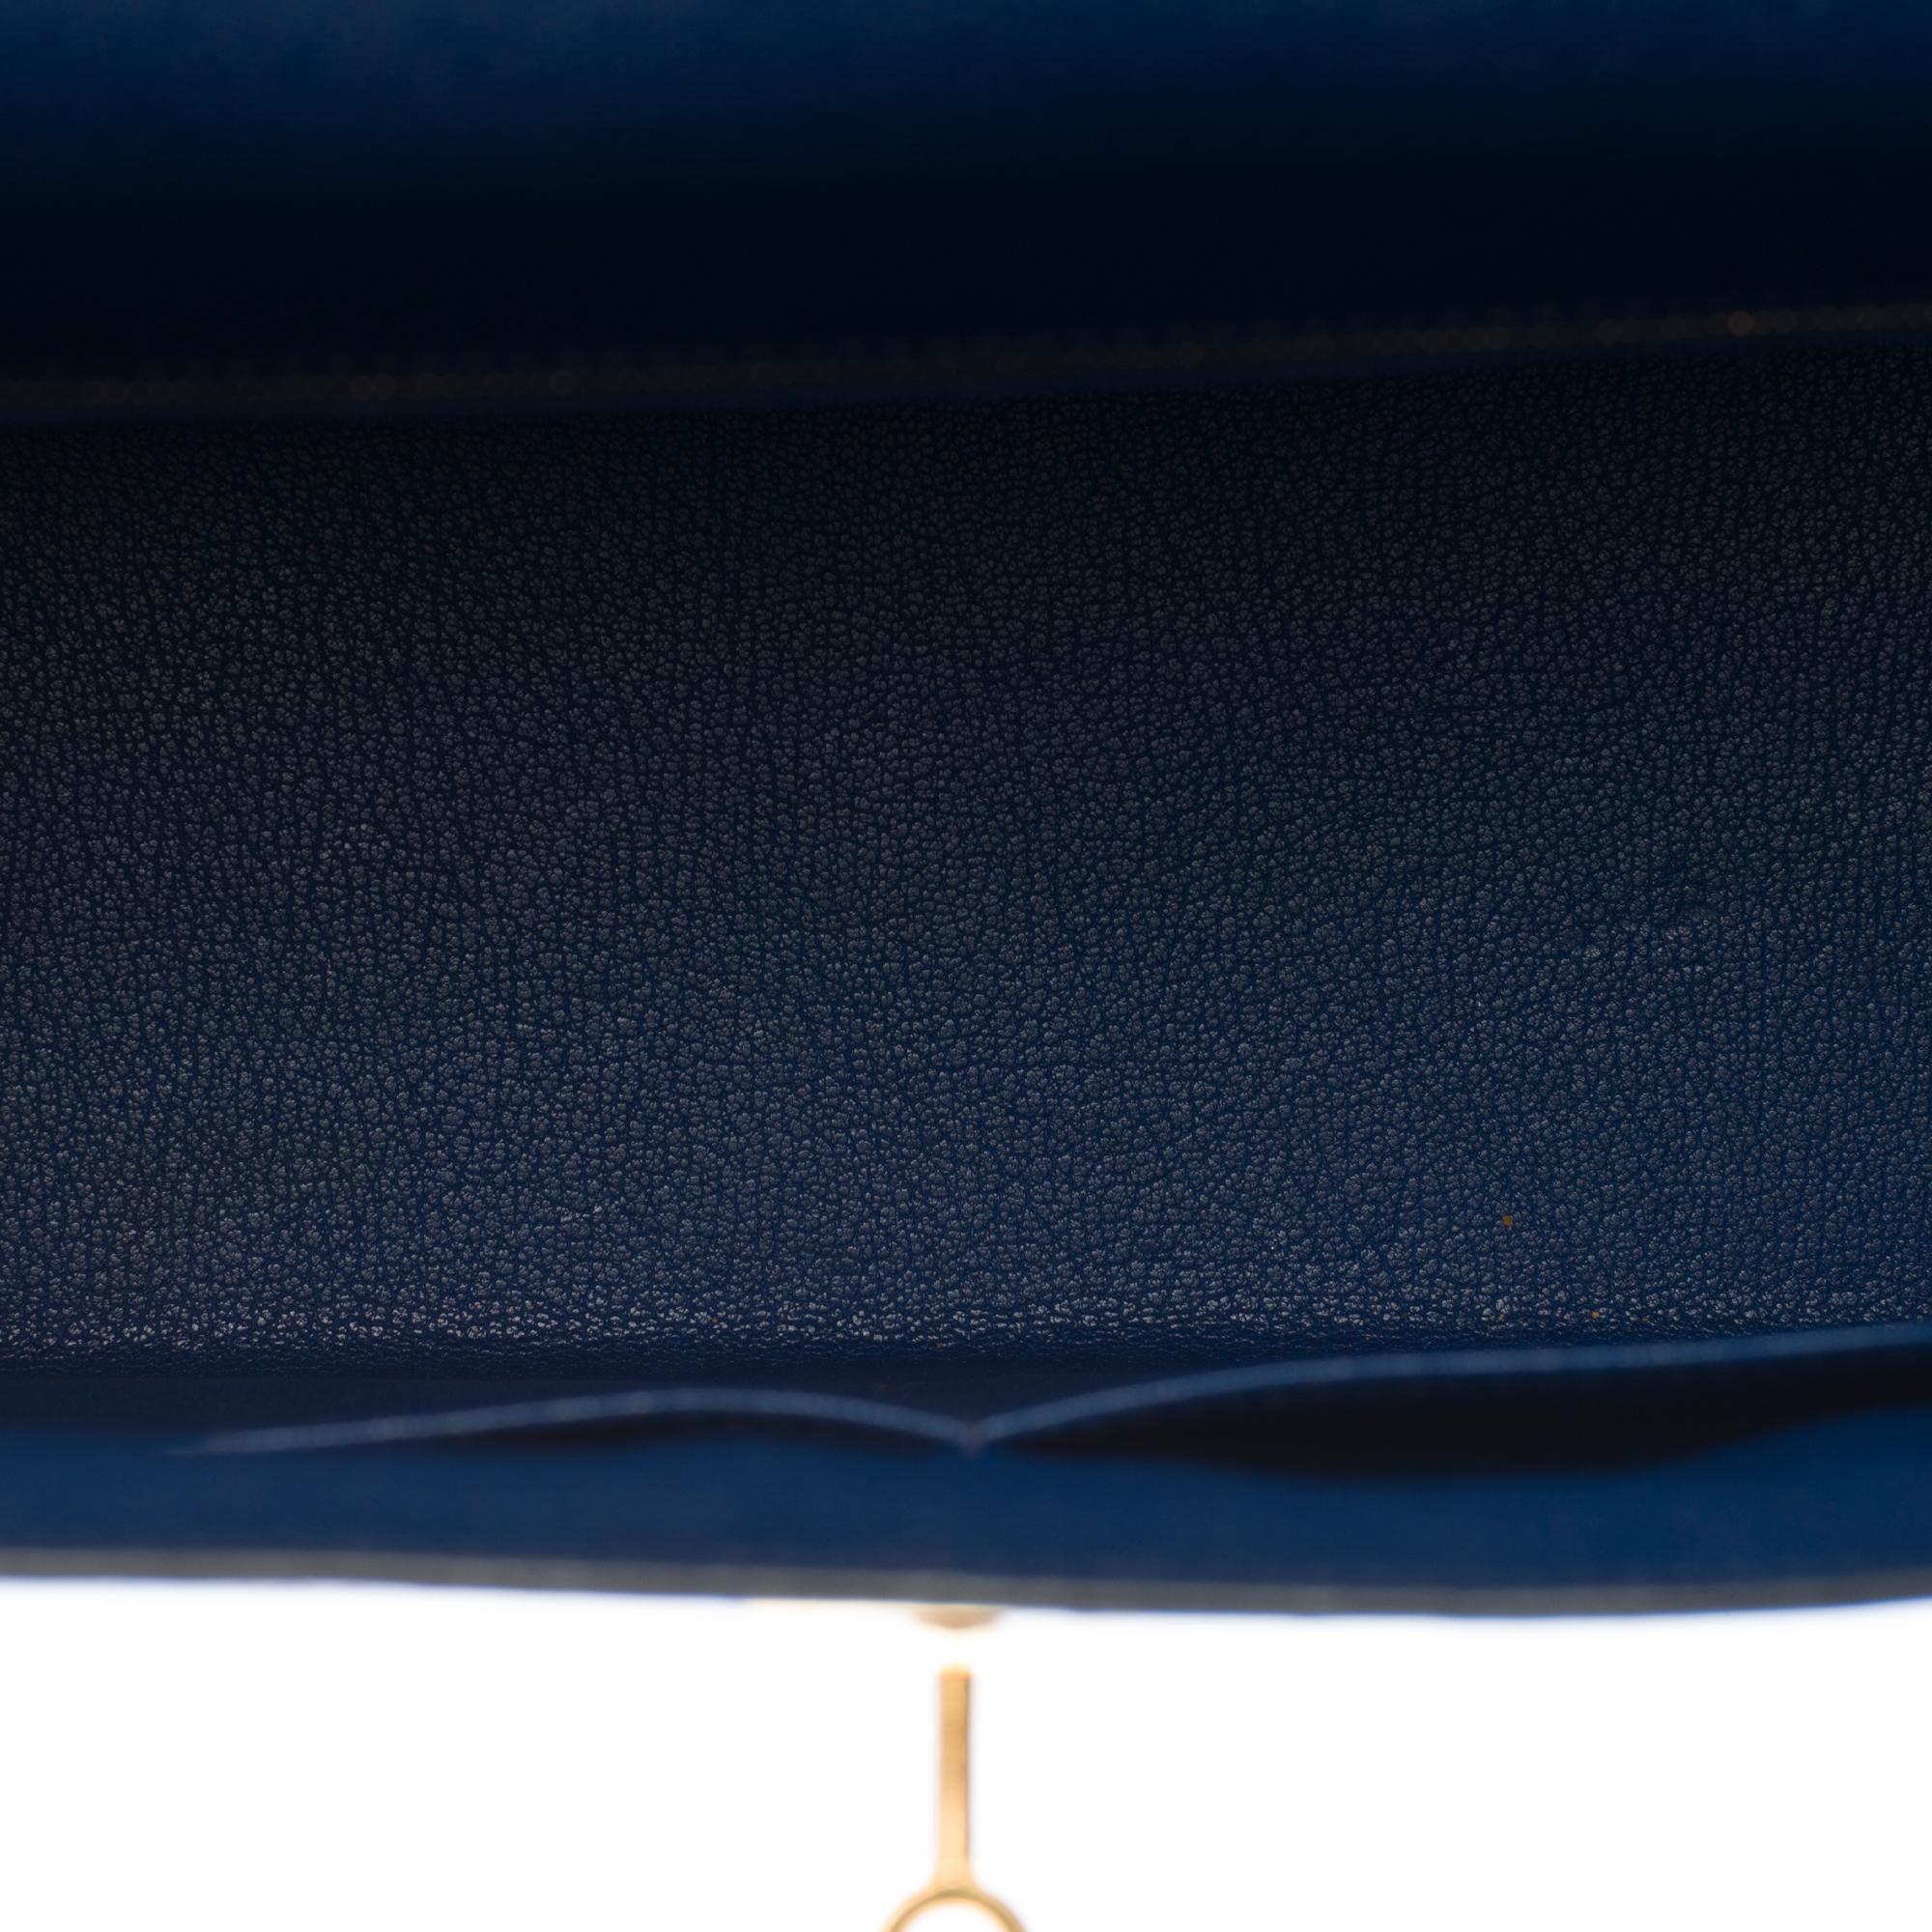 Hermès Kelly 35 sellier strap shoulder bag in epsom blue saphir leather, GHW 2